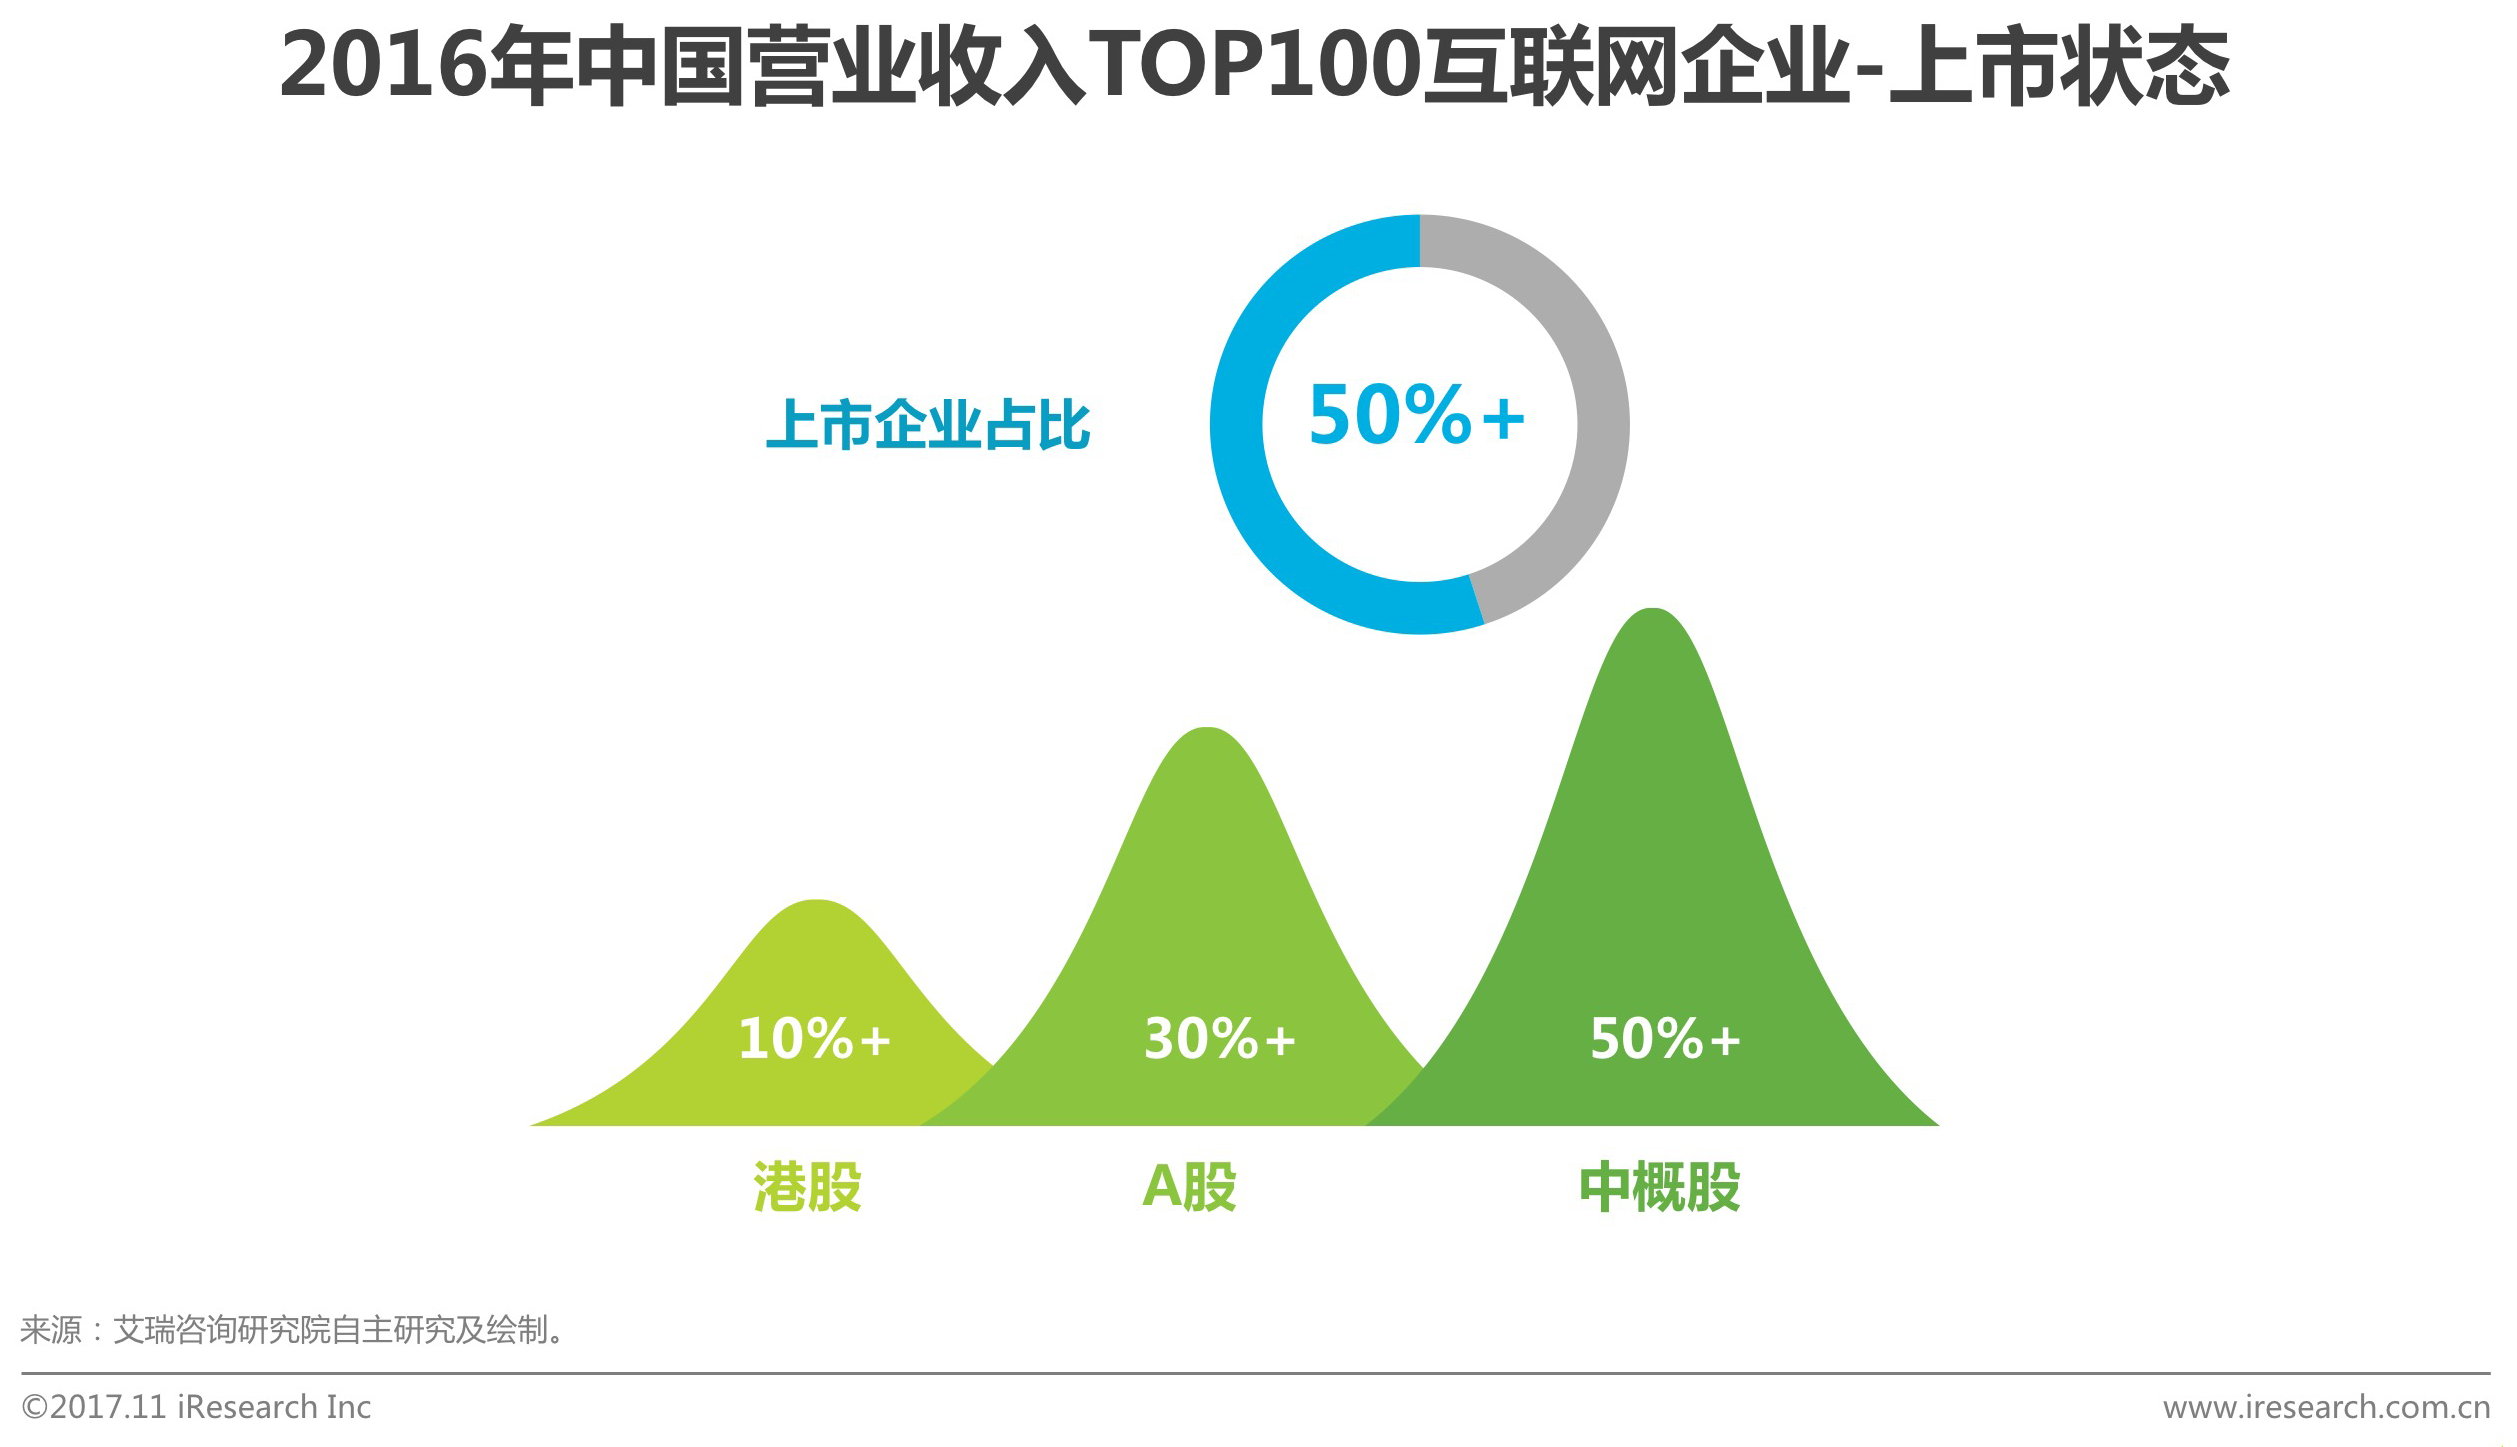 2016年中国营业收入TOP100互联网企业上市状态